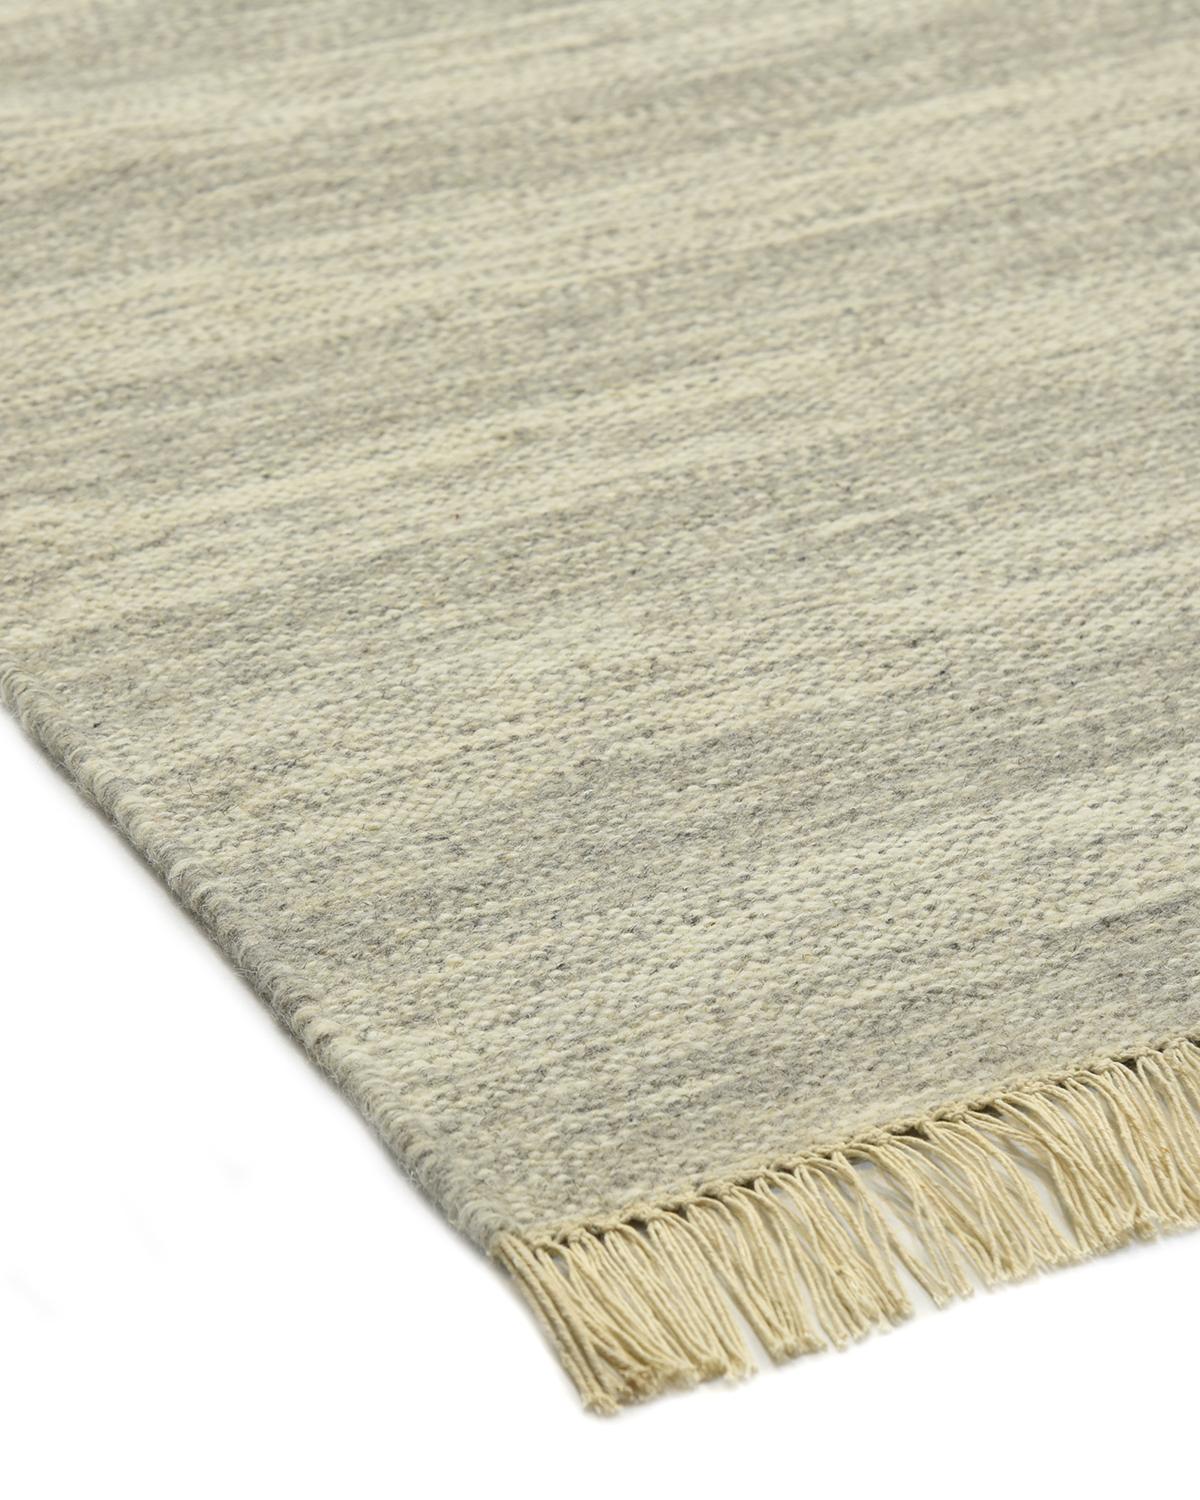 Flachgewebte Teppiche sind langlebig und kostengünstig und eignen sich besonders für drängende Räume und in Haushalten mit Kindern und Hunden. Die handgewebten Teppiche der Flatweave-Kollektion sind sowohl schön als auch praktisch. Ihre ruhigen